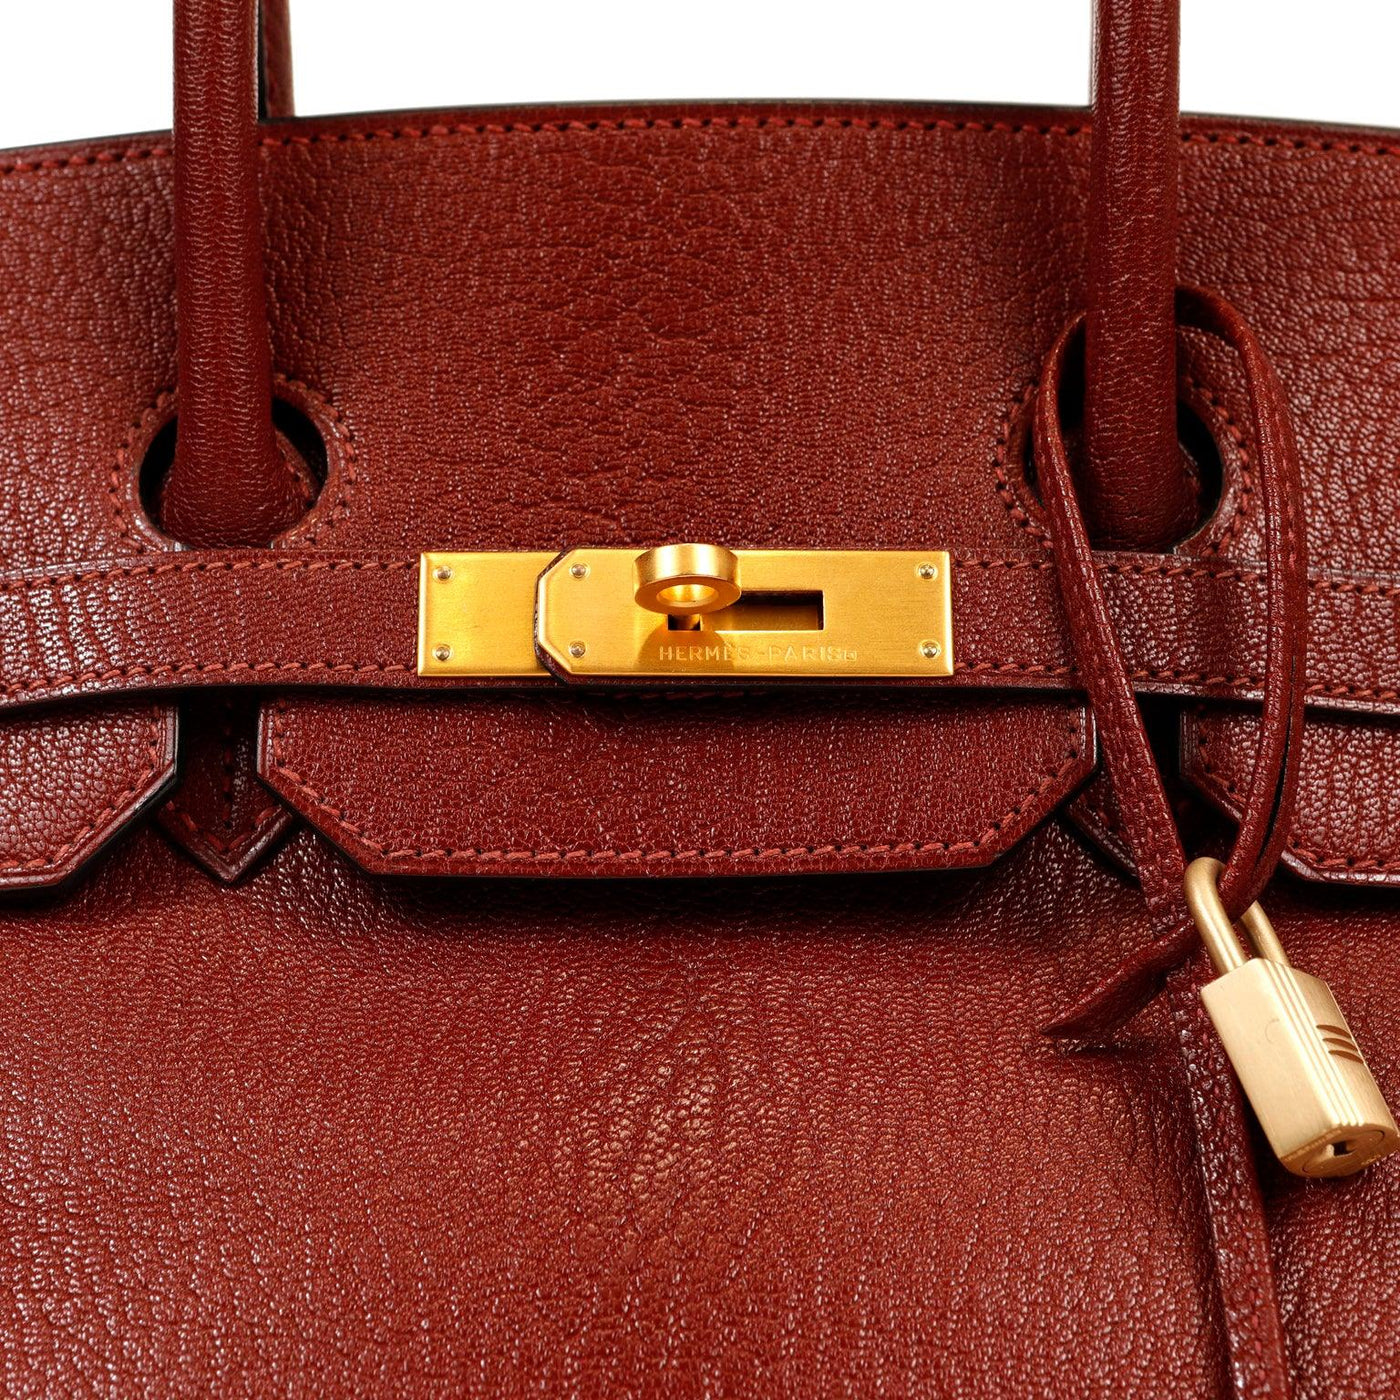 Hermès 35cm Bordeaux Chevre Birkin with Gold Hardware - Only Authentics